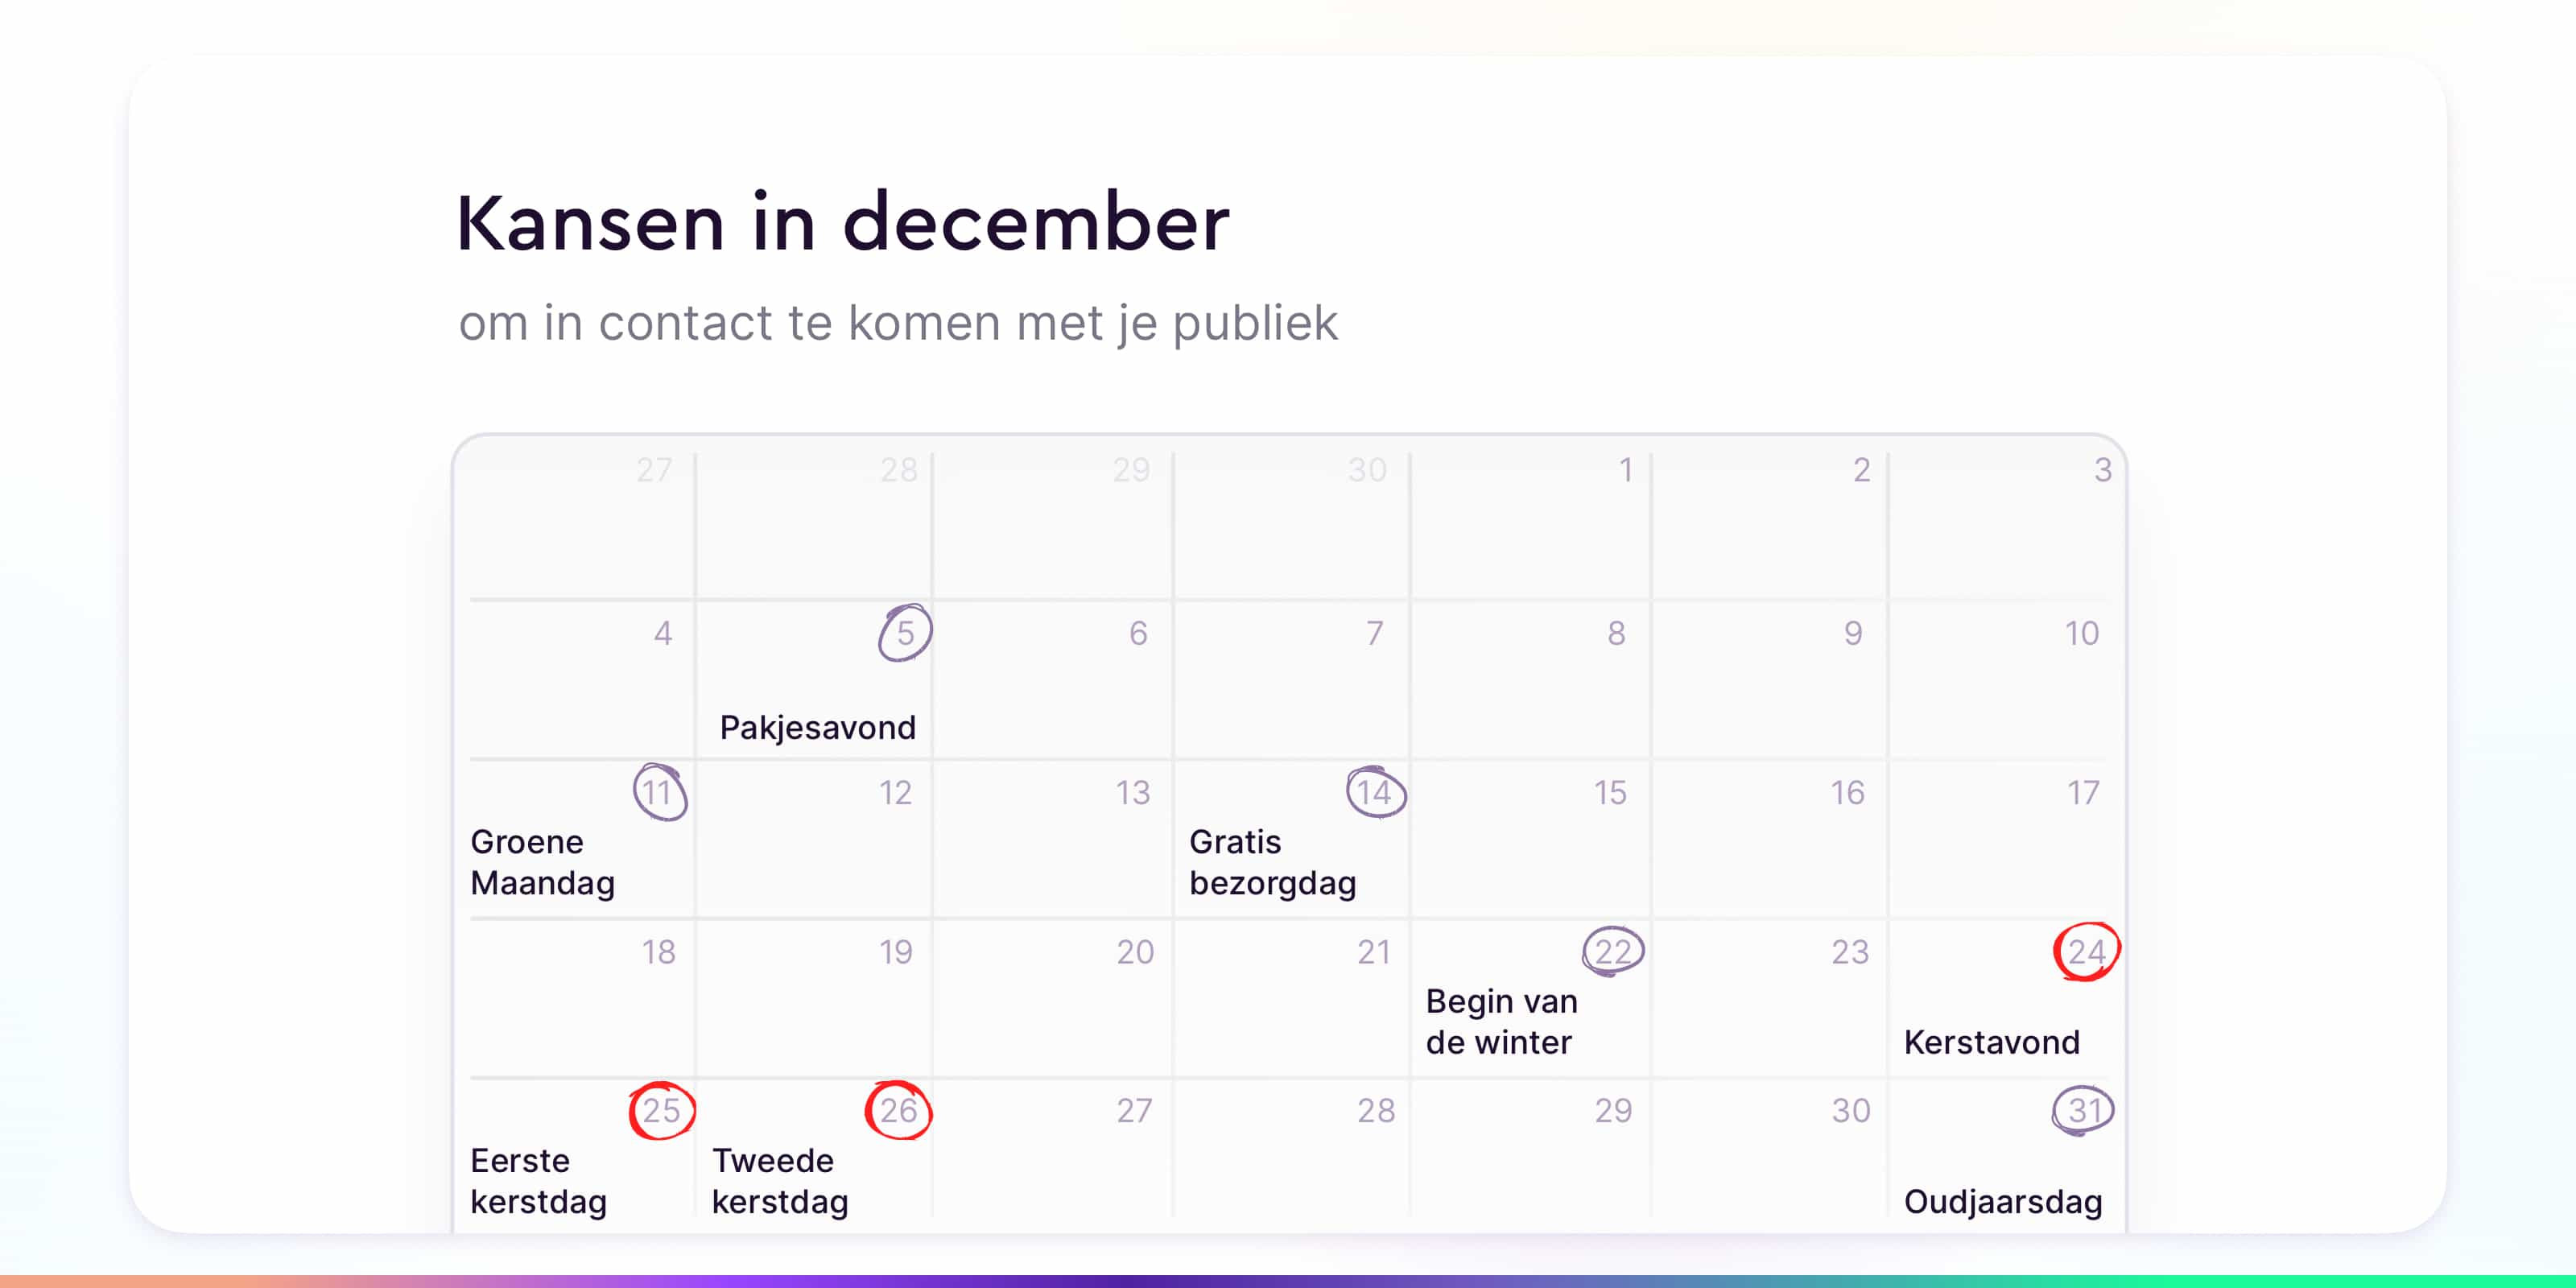 kalender kansen voor relatiemarketing in december .jpg.jpg